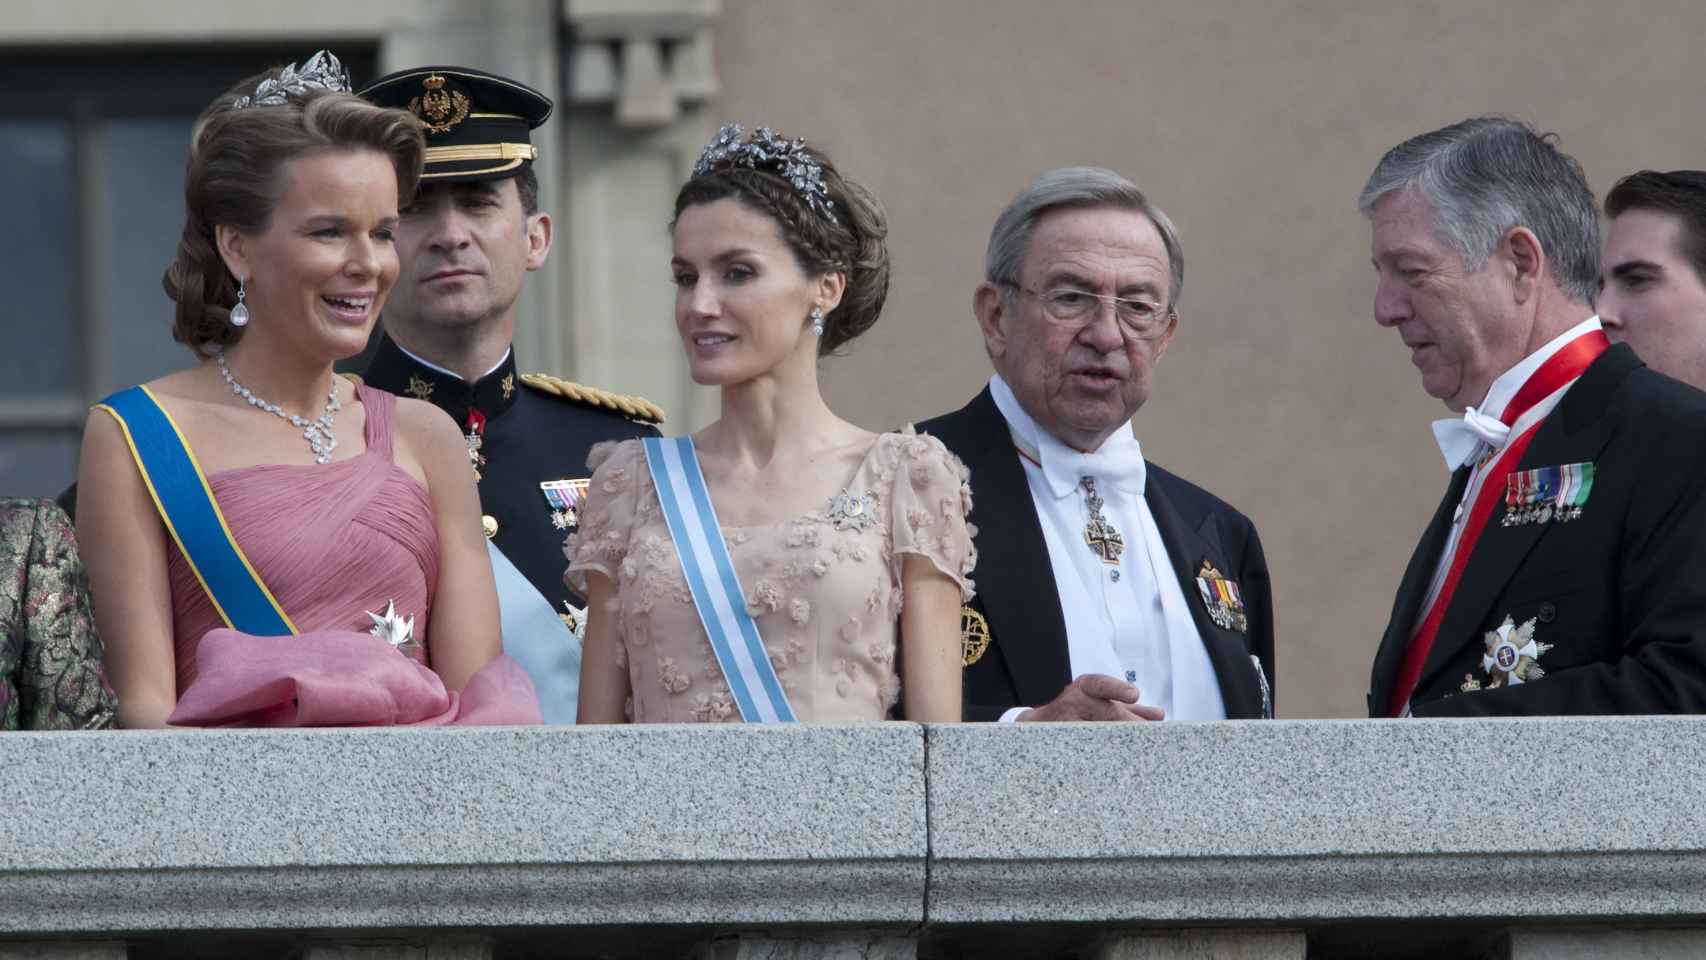 Constantino de Grecia en una fotografía tomada en Estocolmo en 2010, junto a Letizia, Felipe VI y la princesa Matilde de Bélgica.